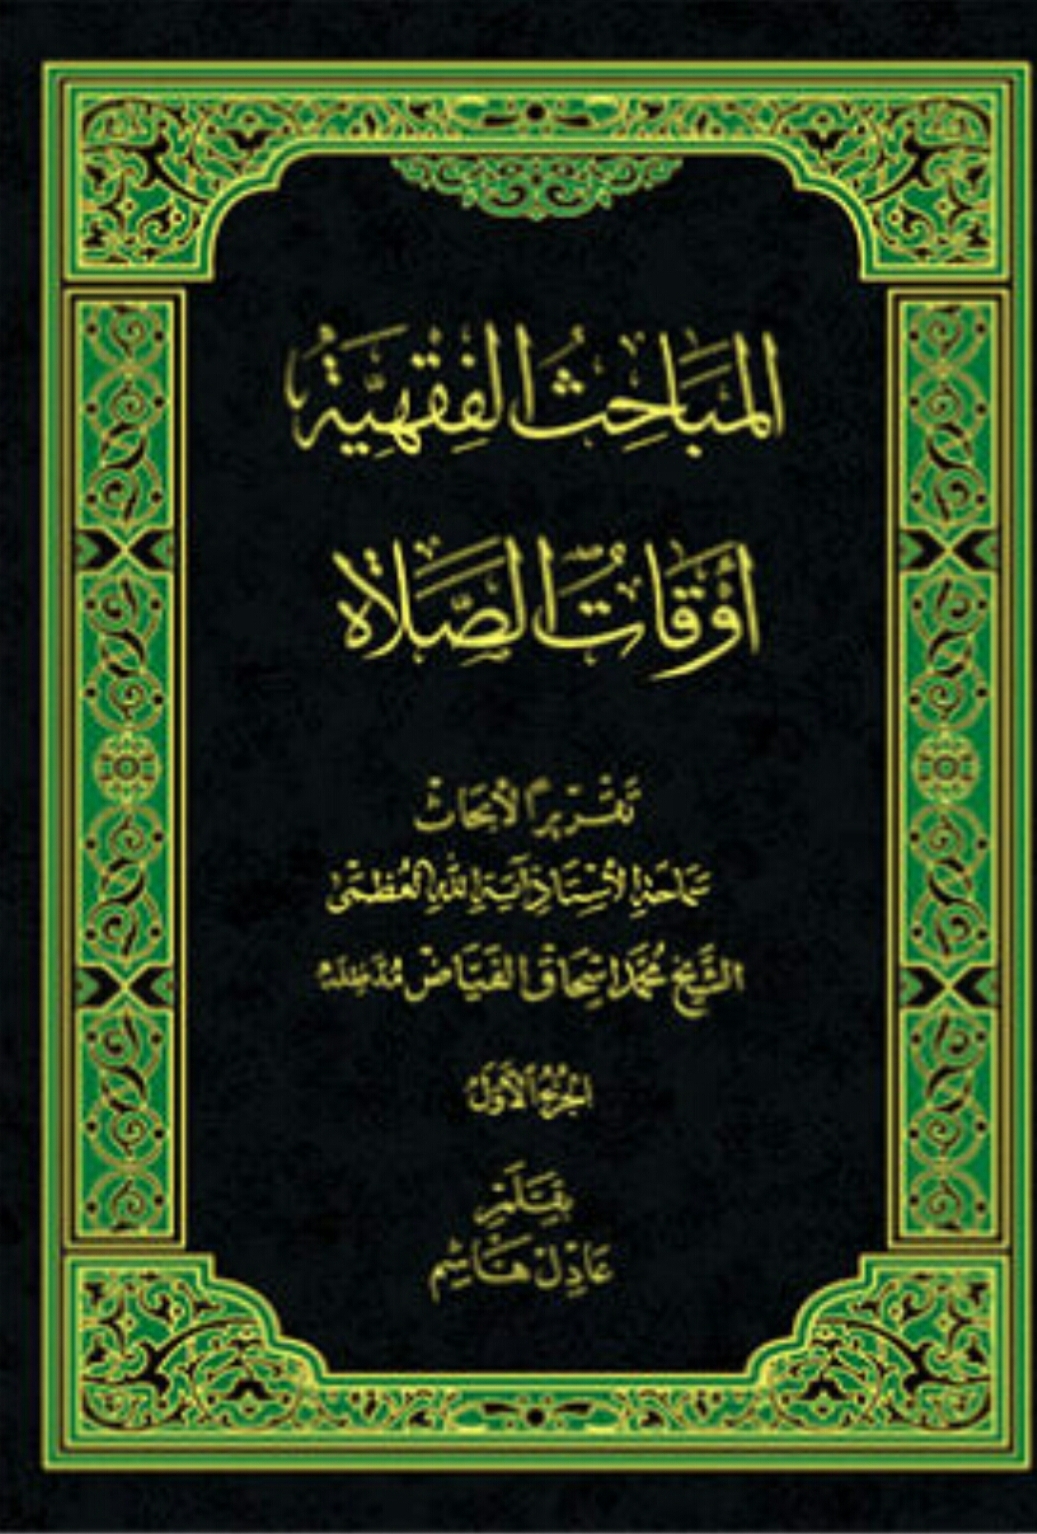 صدر حديثا - أوقات الصلاة ج1 - بقلم الشيخ عادل هاشم